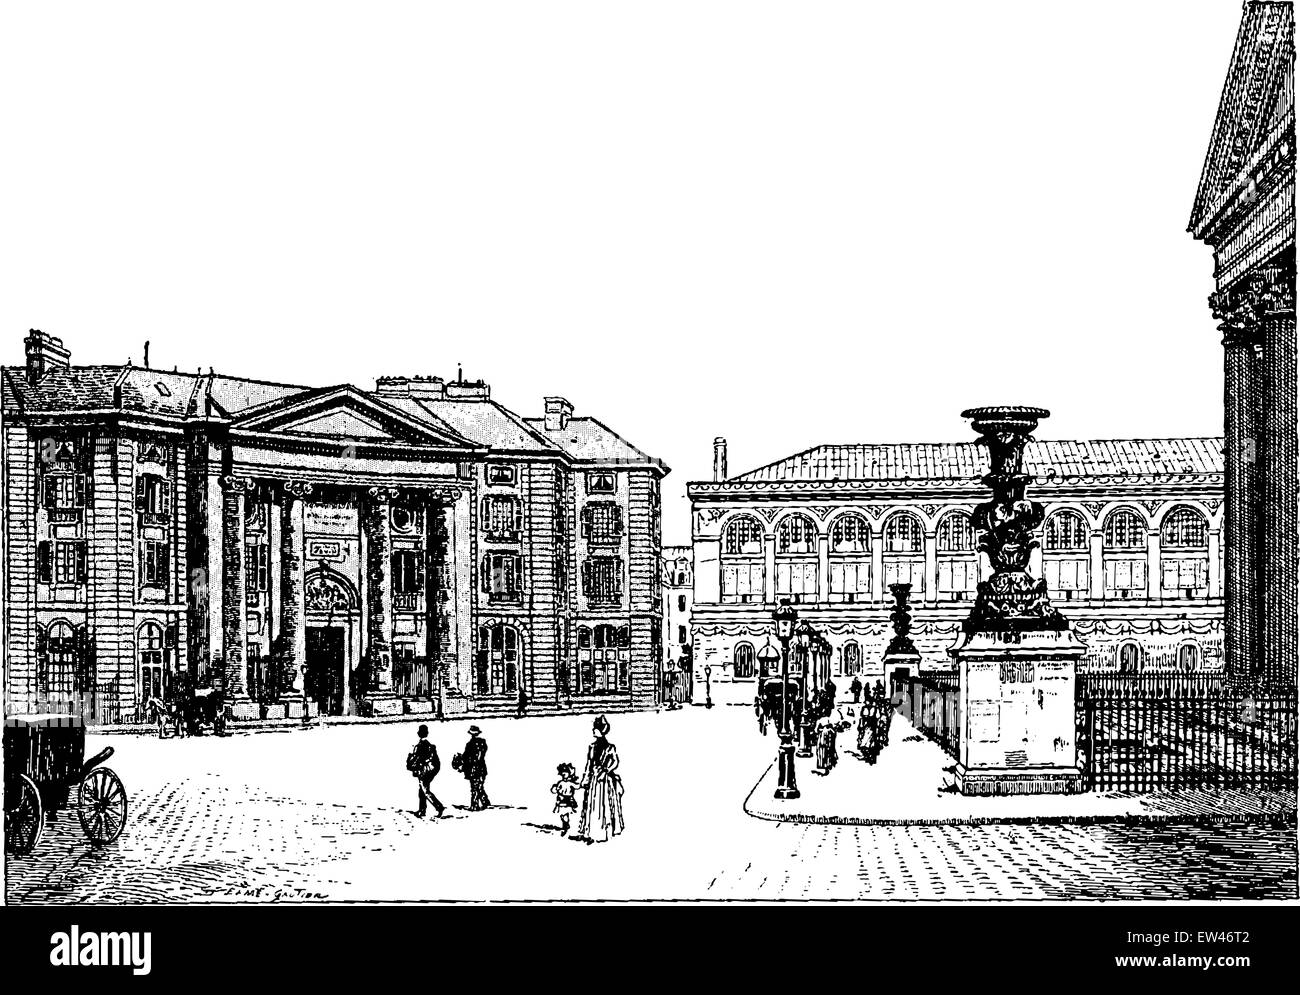 Law School und Bibliothèque Saint Genevieve, graviert Vintage Illustration. Paris - Auguste VITU – 1890. Stock Vektor